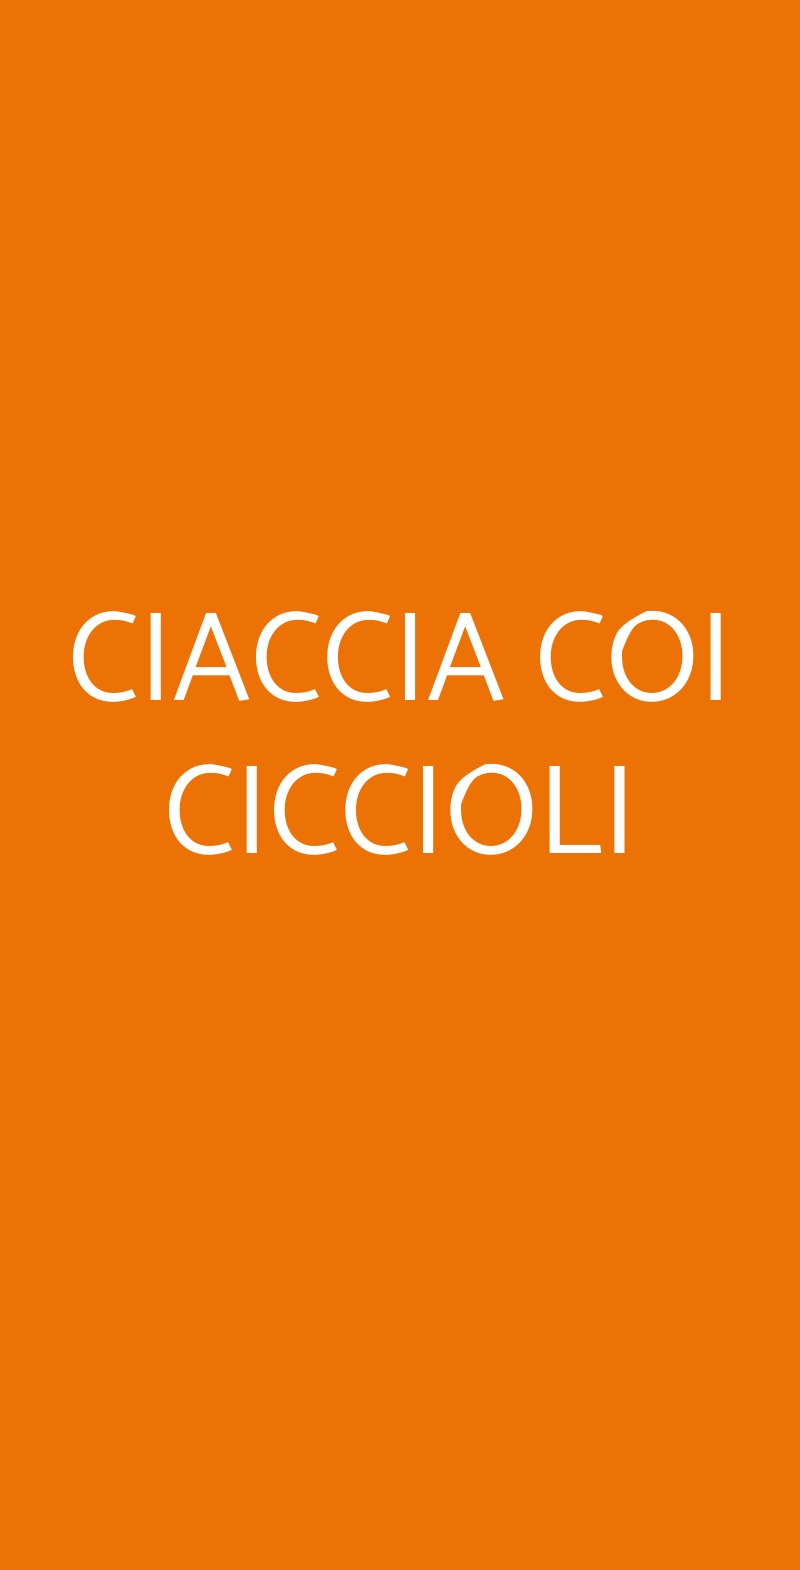 CIACCIA COI CICCIOLI Milano menù 1 pagina